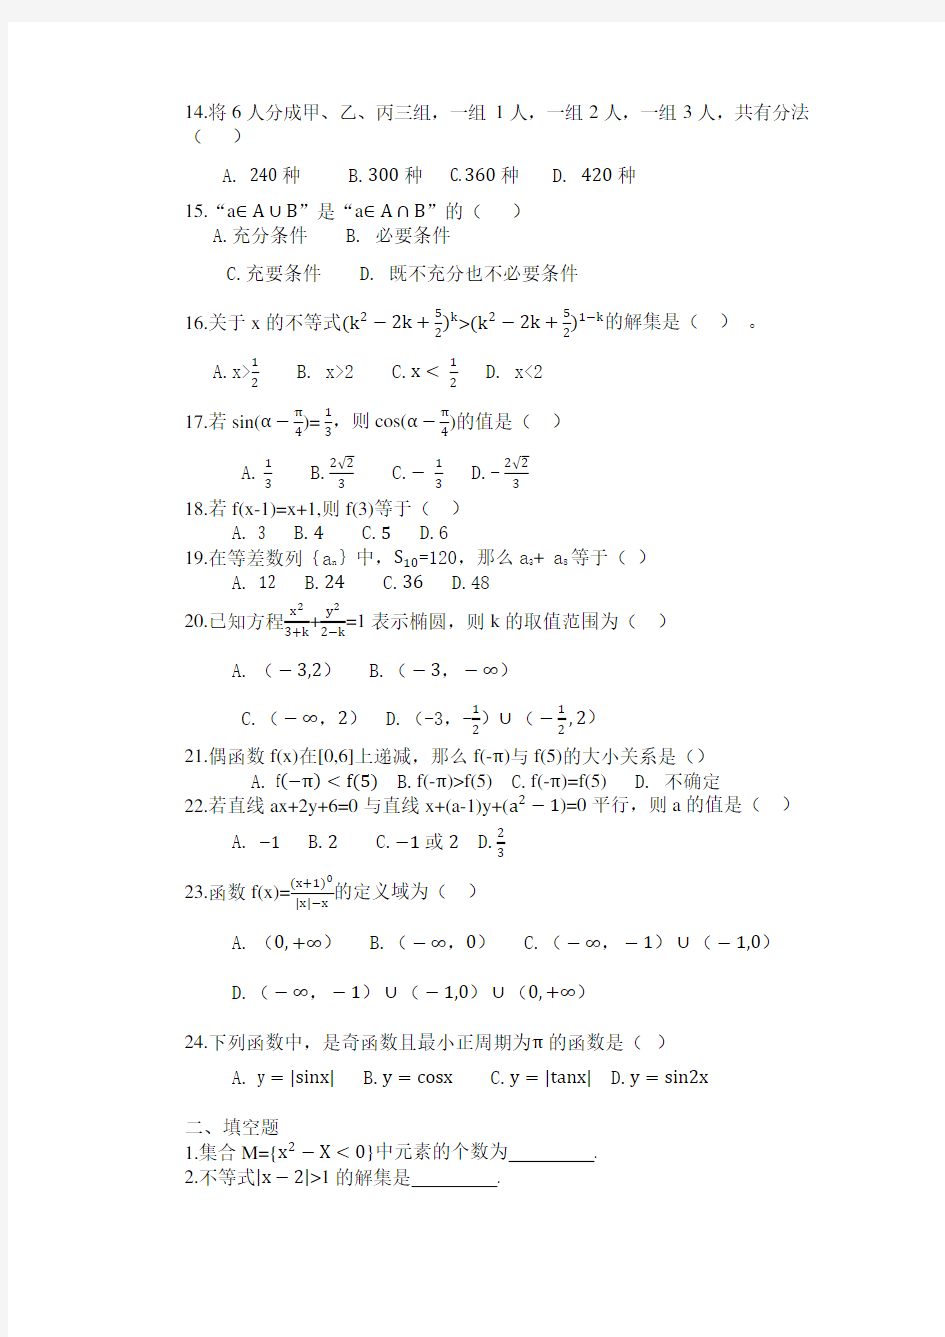 2019对口高职高考数学练习题(2018.11.14)